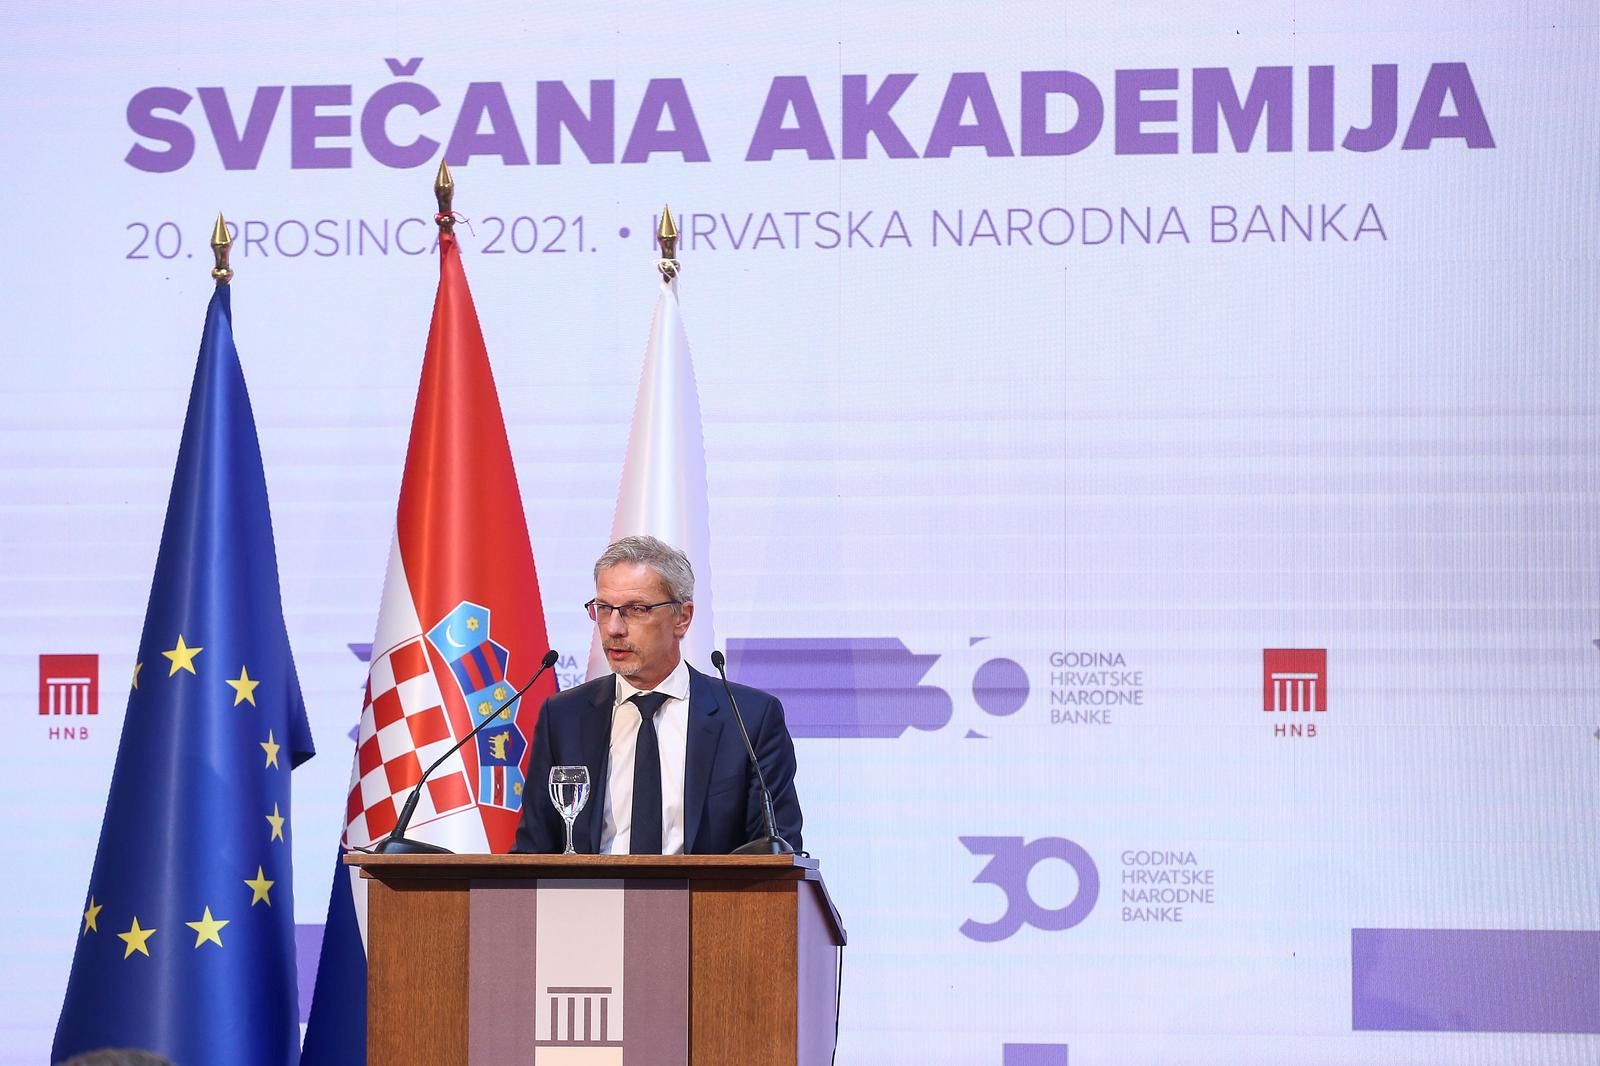 20.12.2021., Zagreb - Svecana akademija povom 30. obljetnice Hrvatske narodne banke. Boris Vujcic.